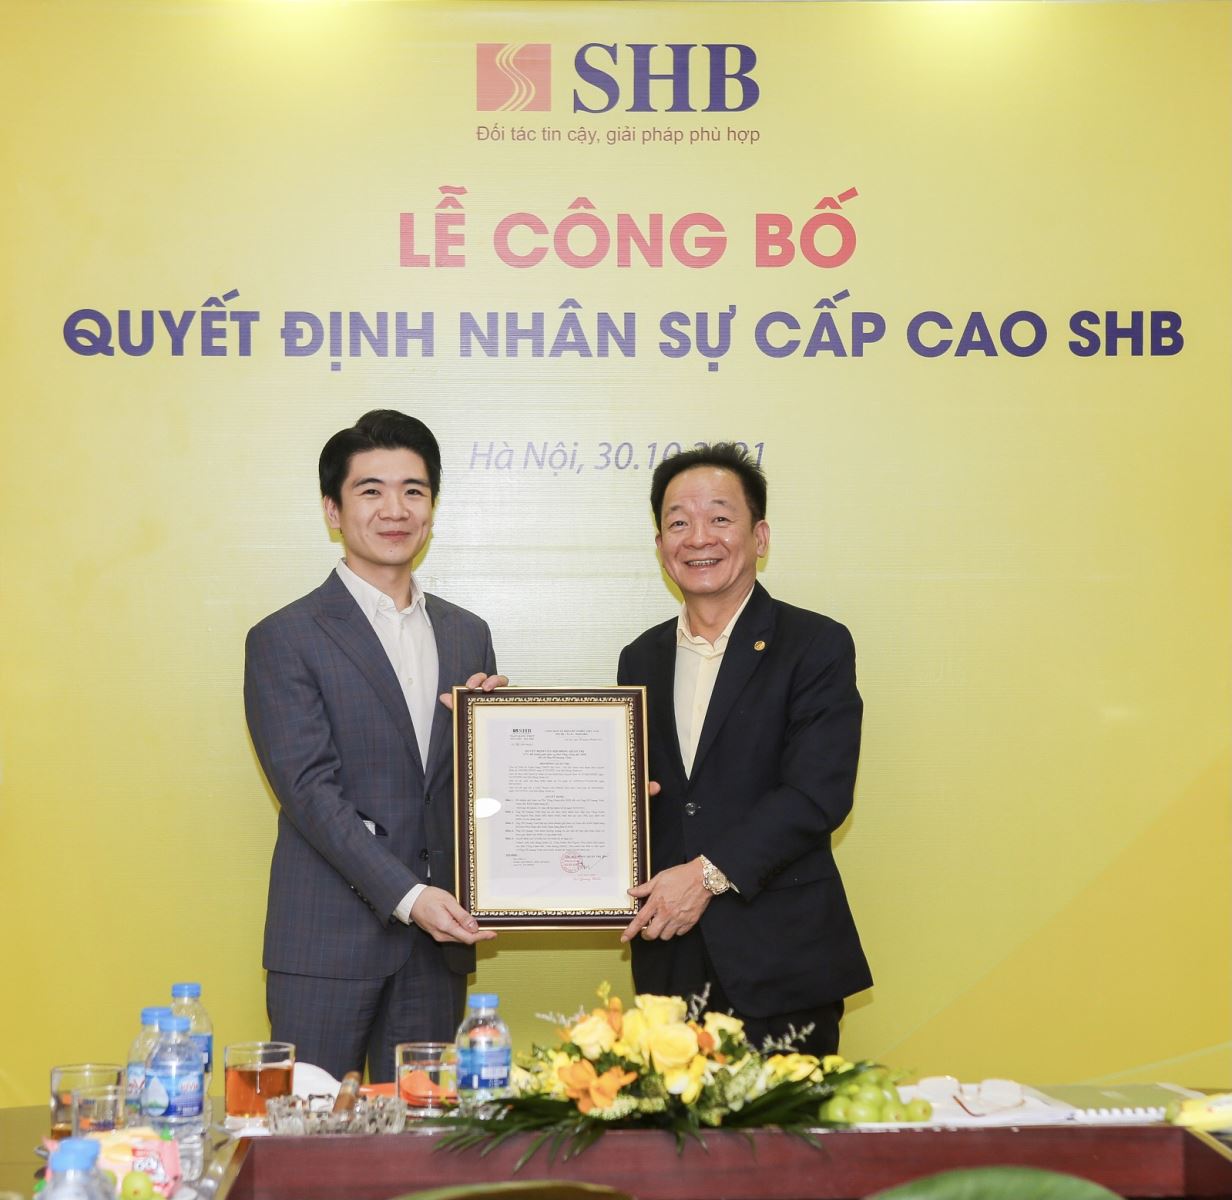 Ngày 30/10/2021, Ngân hàng Sài Gòn – Hà Nội (SHB) đã chính thức bổ nhiệm ông Đỗ Quang Vinh làm Phó Tổng Giám đốc